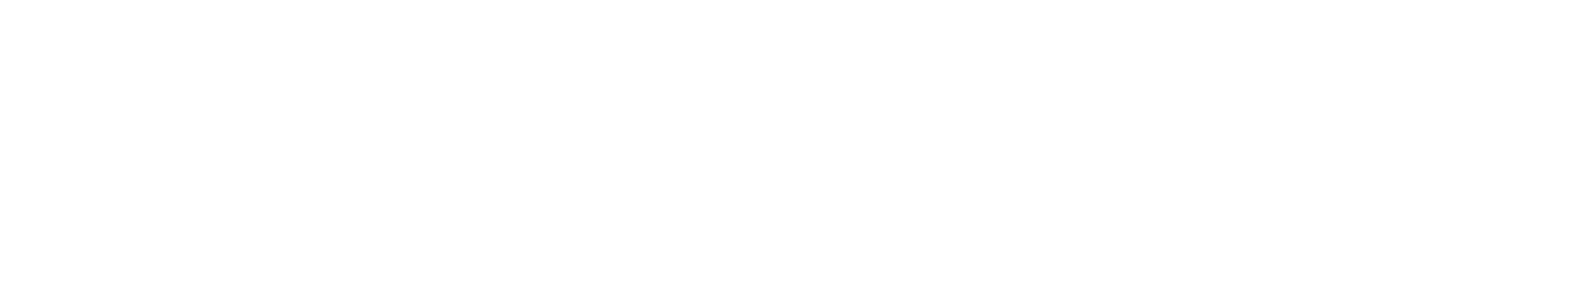 ORION logo large for dark backgrounds (transparent PNG)